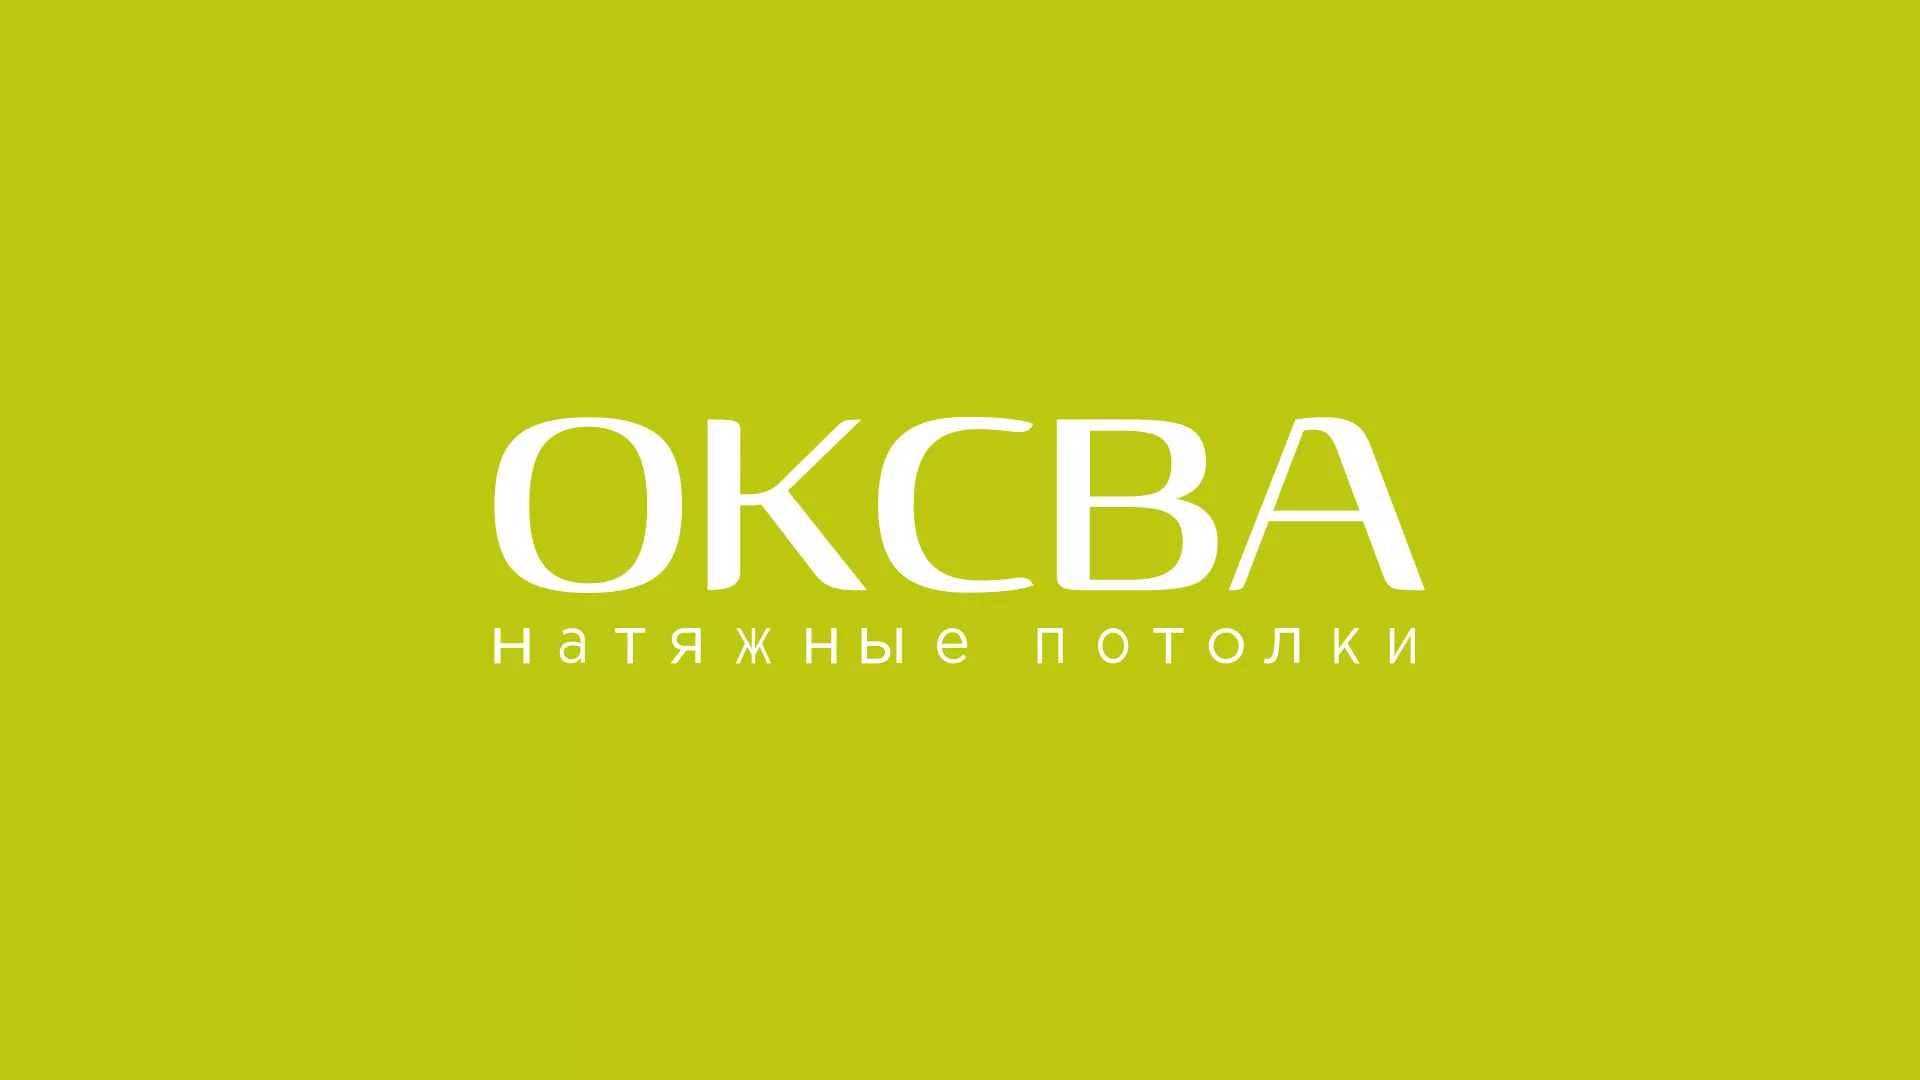 Создание сайта по продаже натяжных потолков для компании «ОКСВА» в Николаевске-на-Амуре